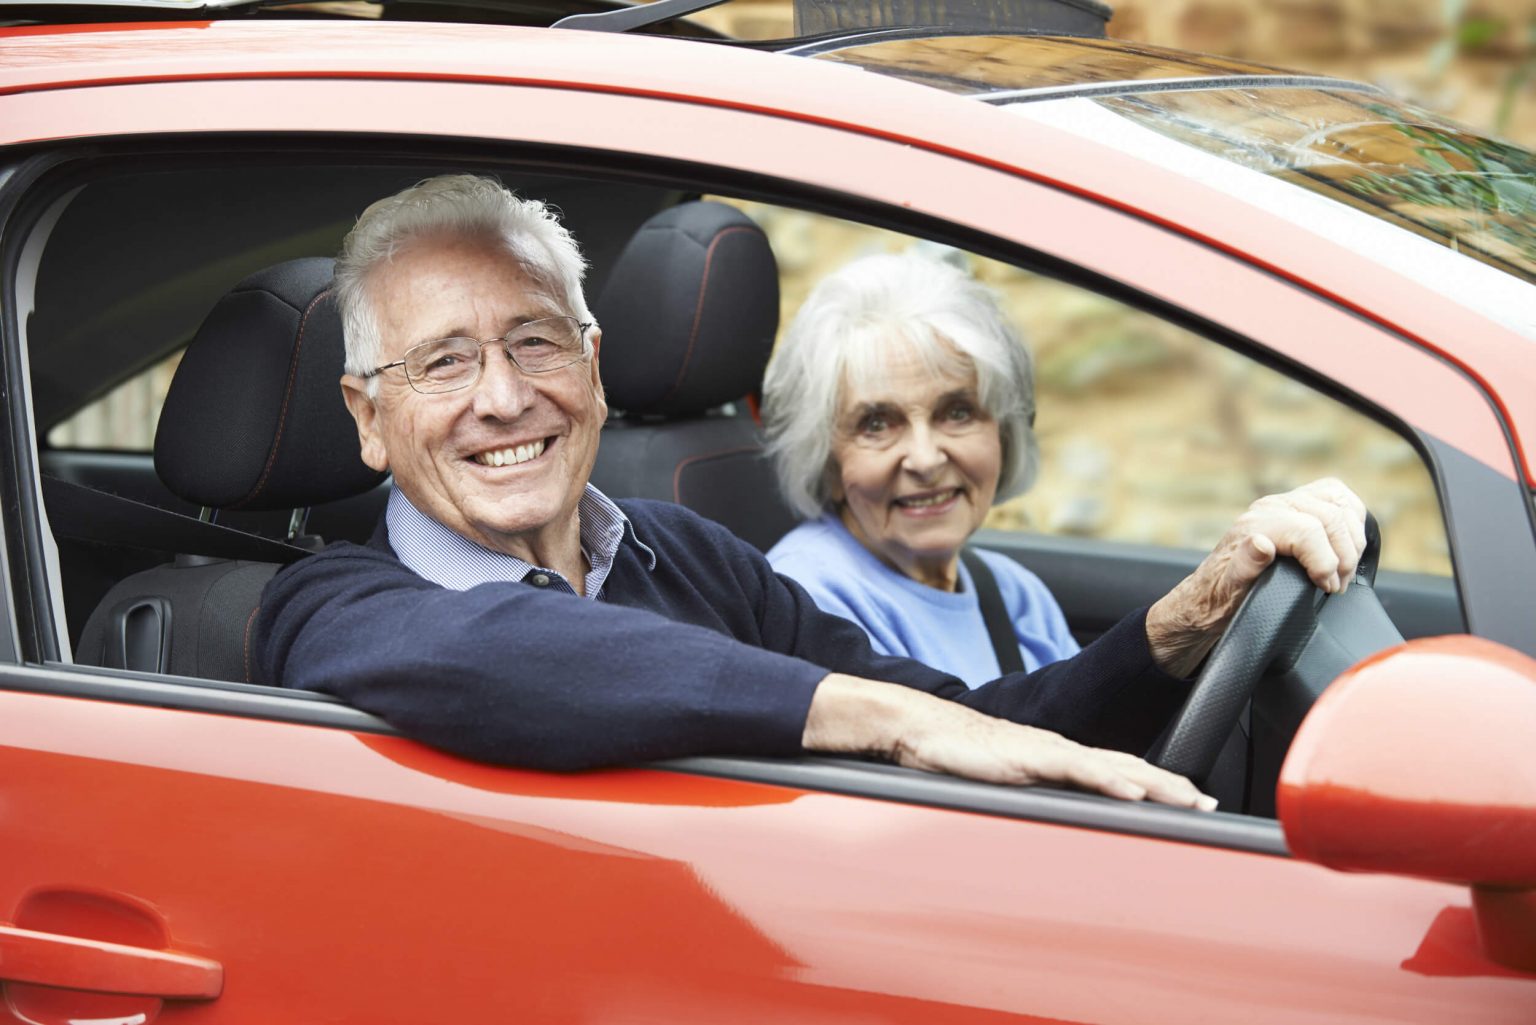 Cheap car insurance for elderly